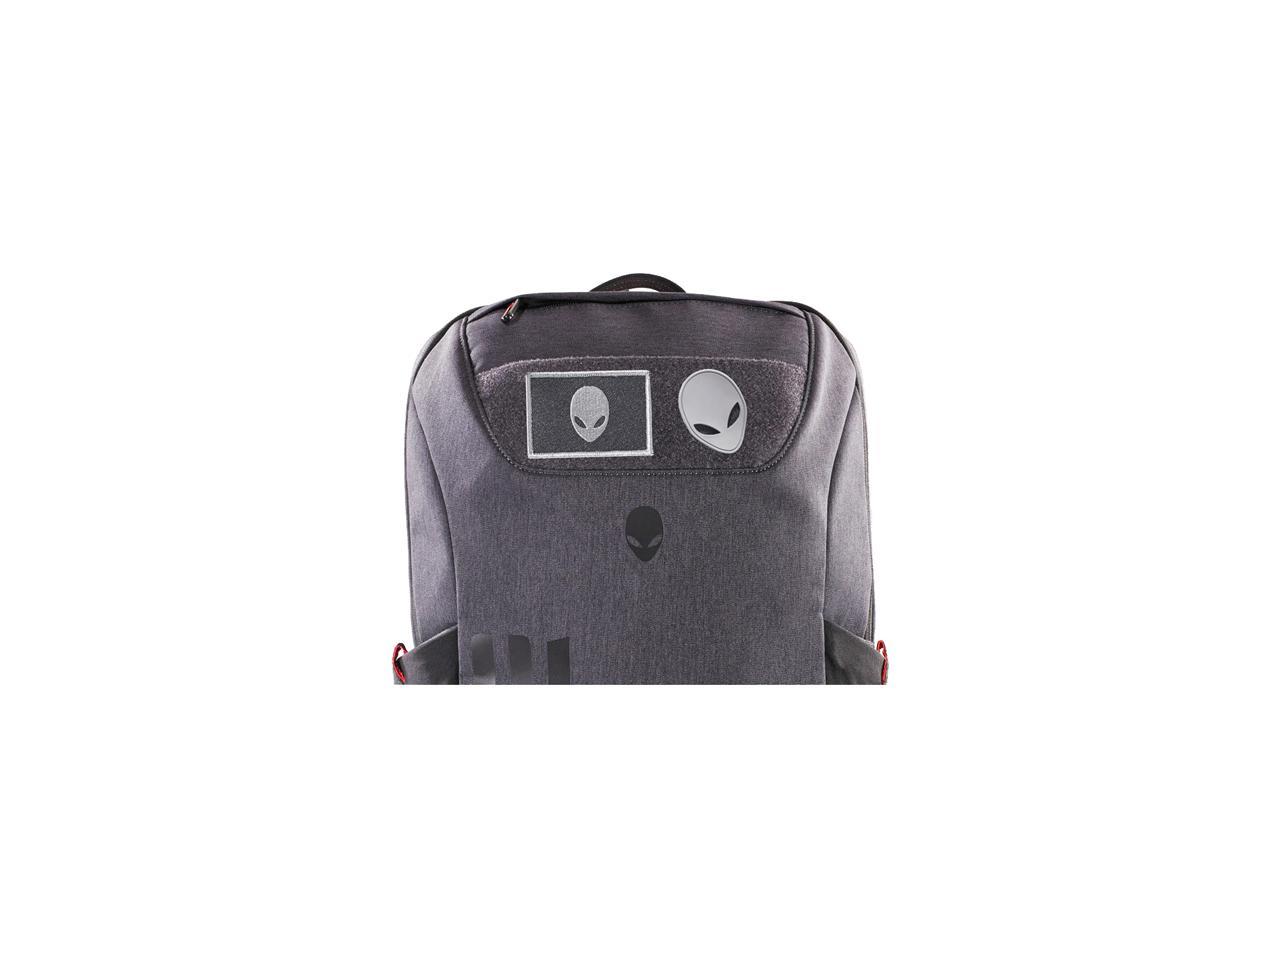 Mobile Edge AWM17BPP Alienware M17 Pro Backpack for 17-inch Laptop - Black 871981001153 | eBay